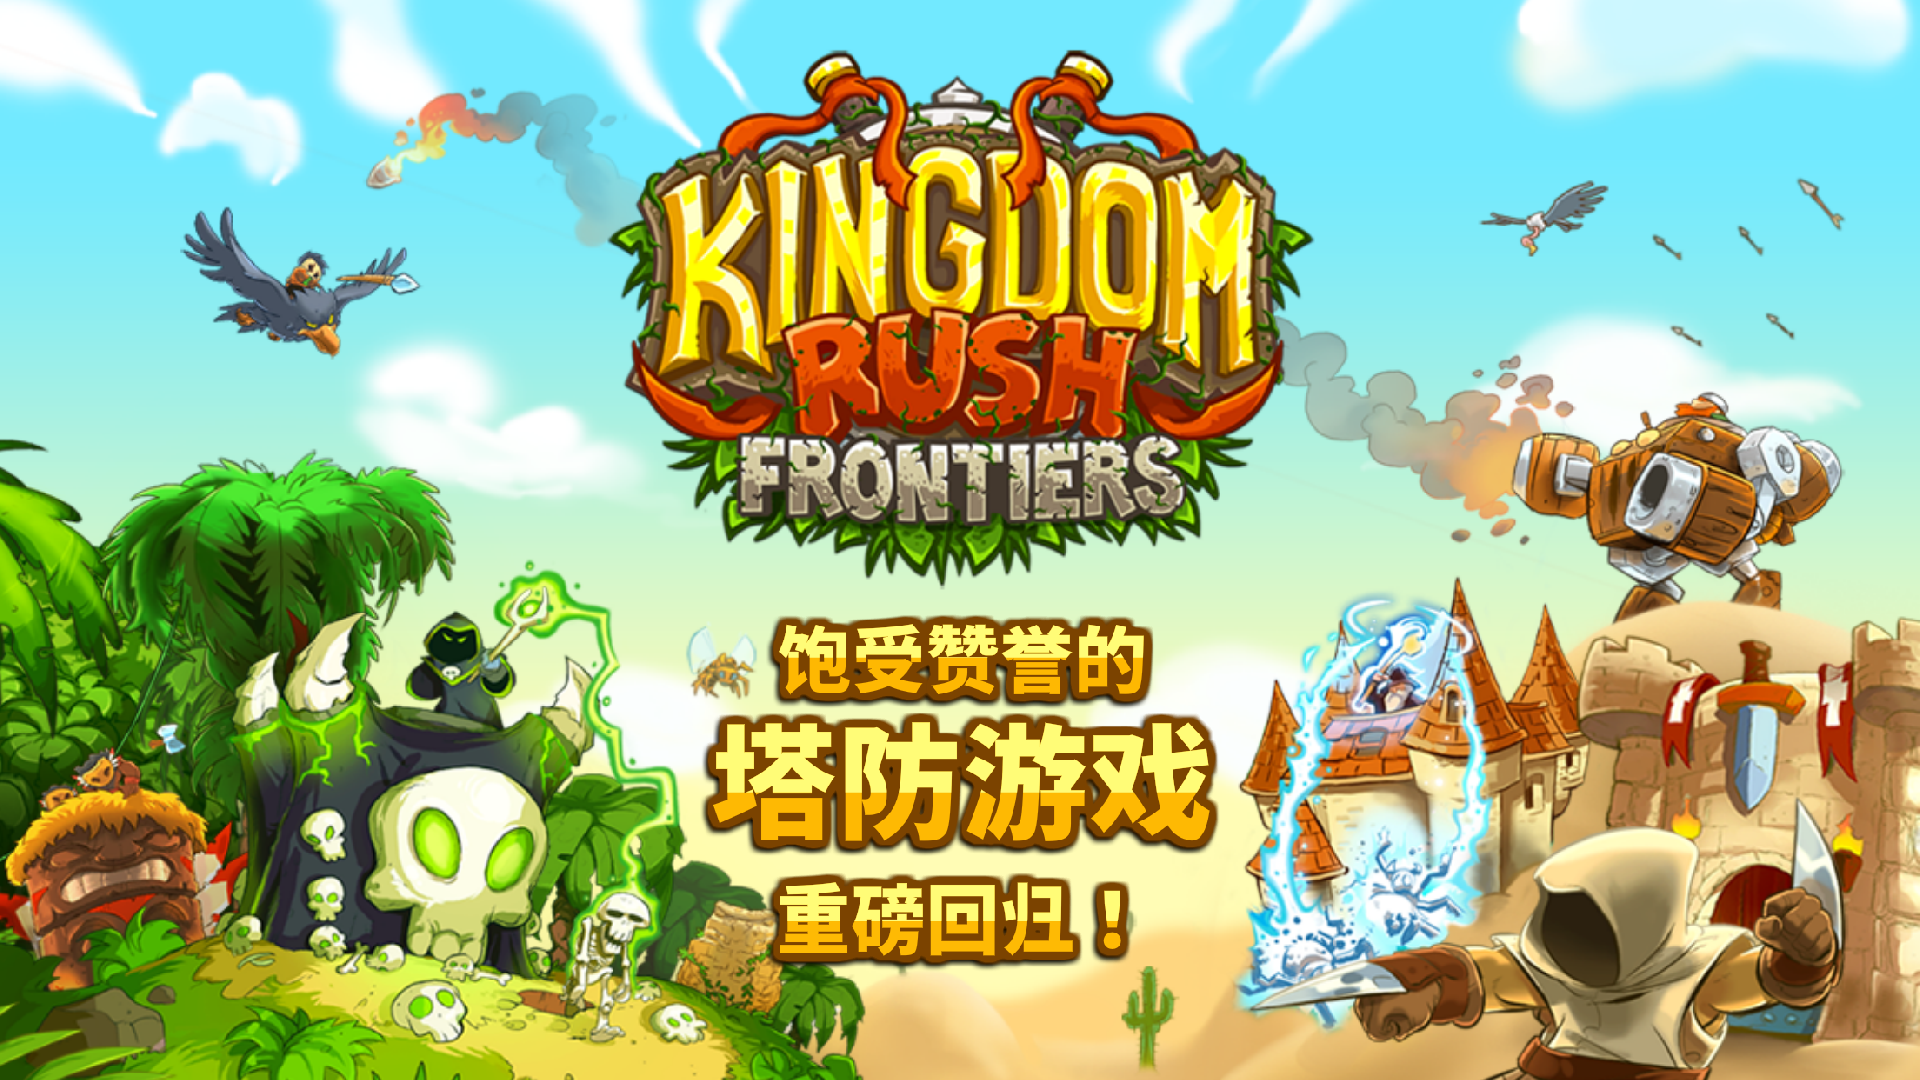 王国保卫战前线下载 Kingdom Rush Frontiers下载手机版官方正版手游